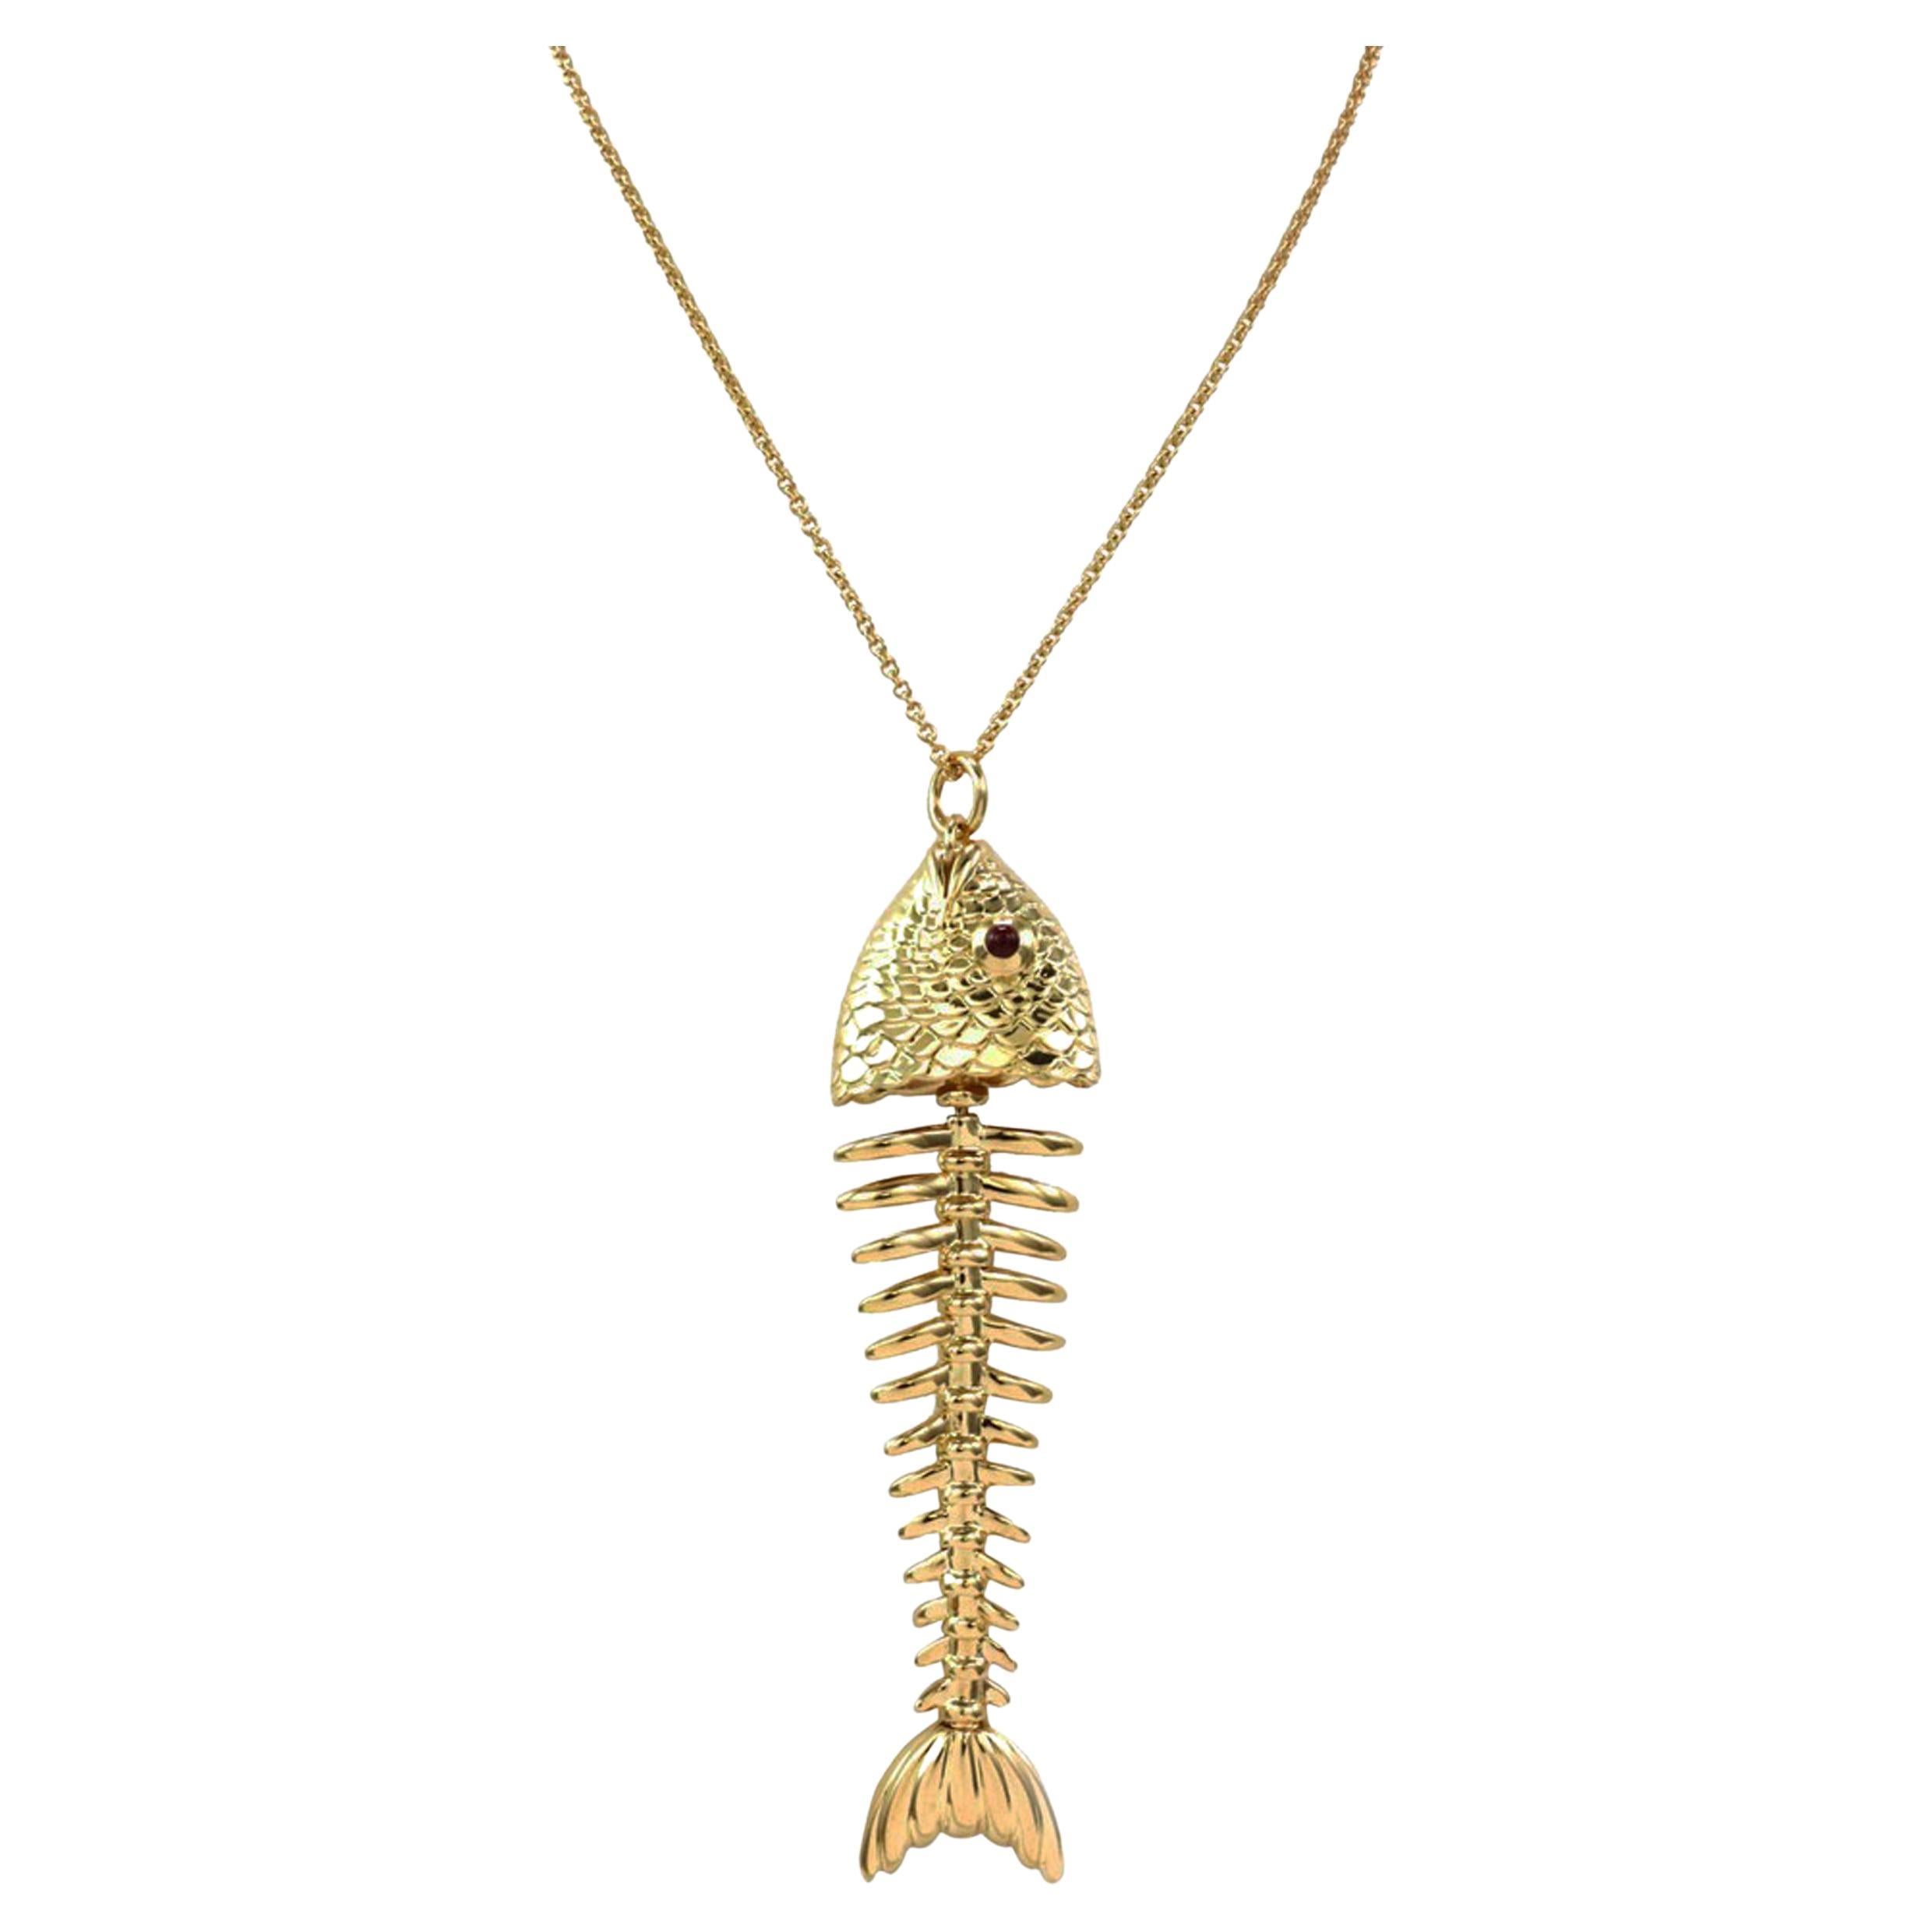 Tiffany & Co. Collier pendentif grand os de poisson en or jaune 18 carats et rubis, rare